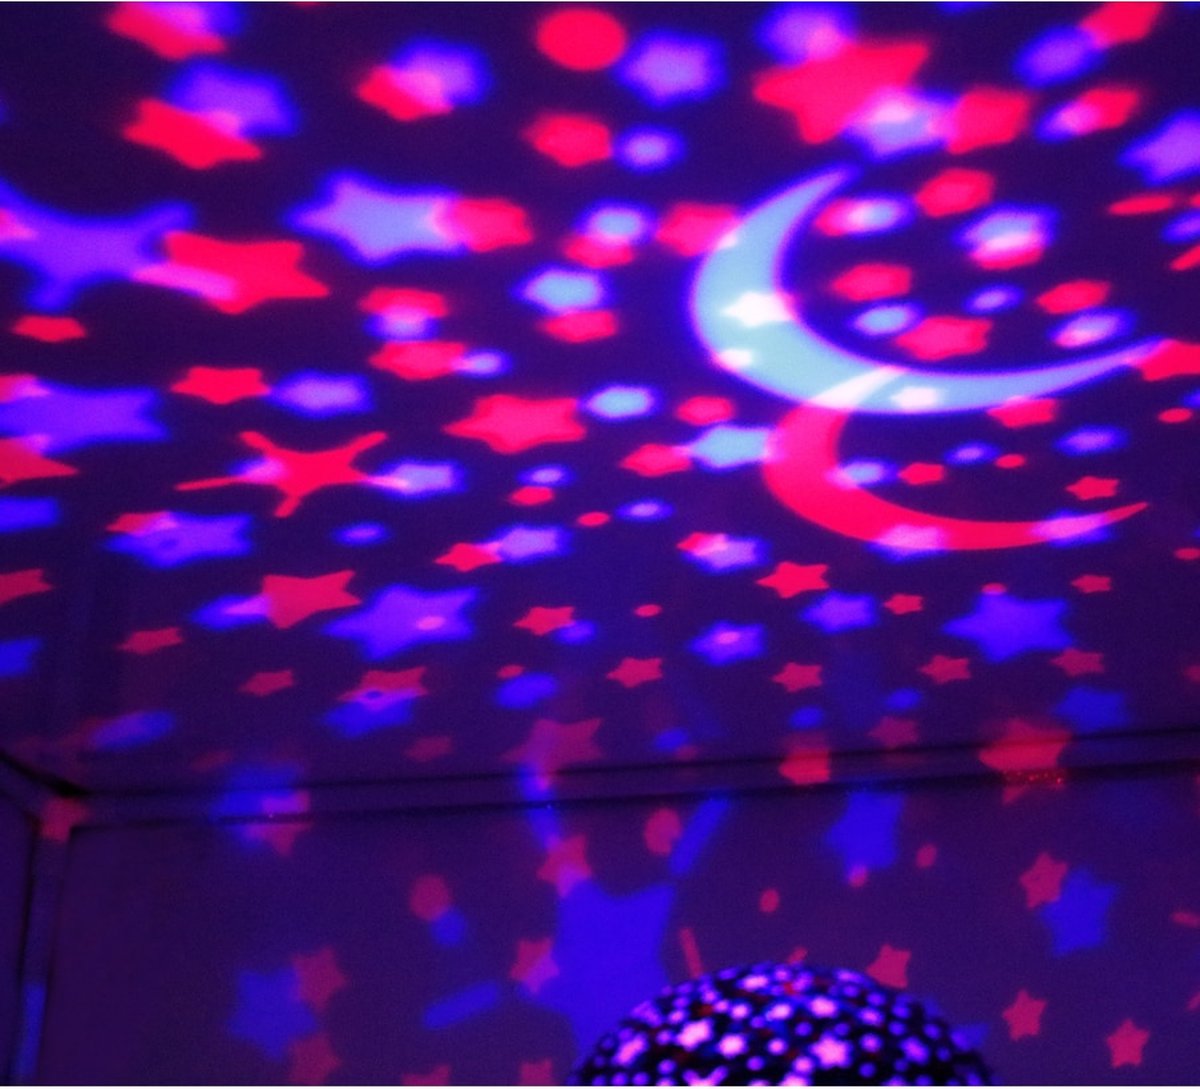 Ariko Nachtlampje Sterren Galaxy Projector Sterrenhemel Star Projector - Sterren of zeedieren Projector - 6 Lichtkleuren - Nachtlampje Kinderen - Roze